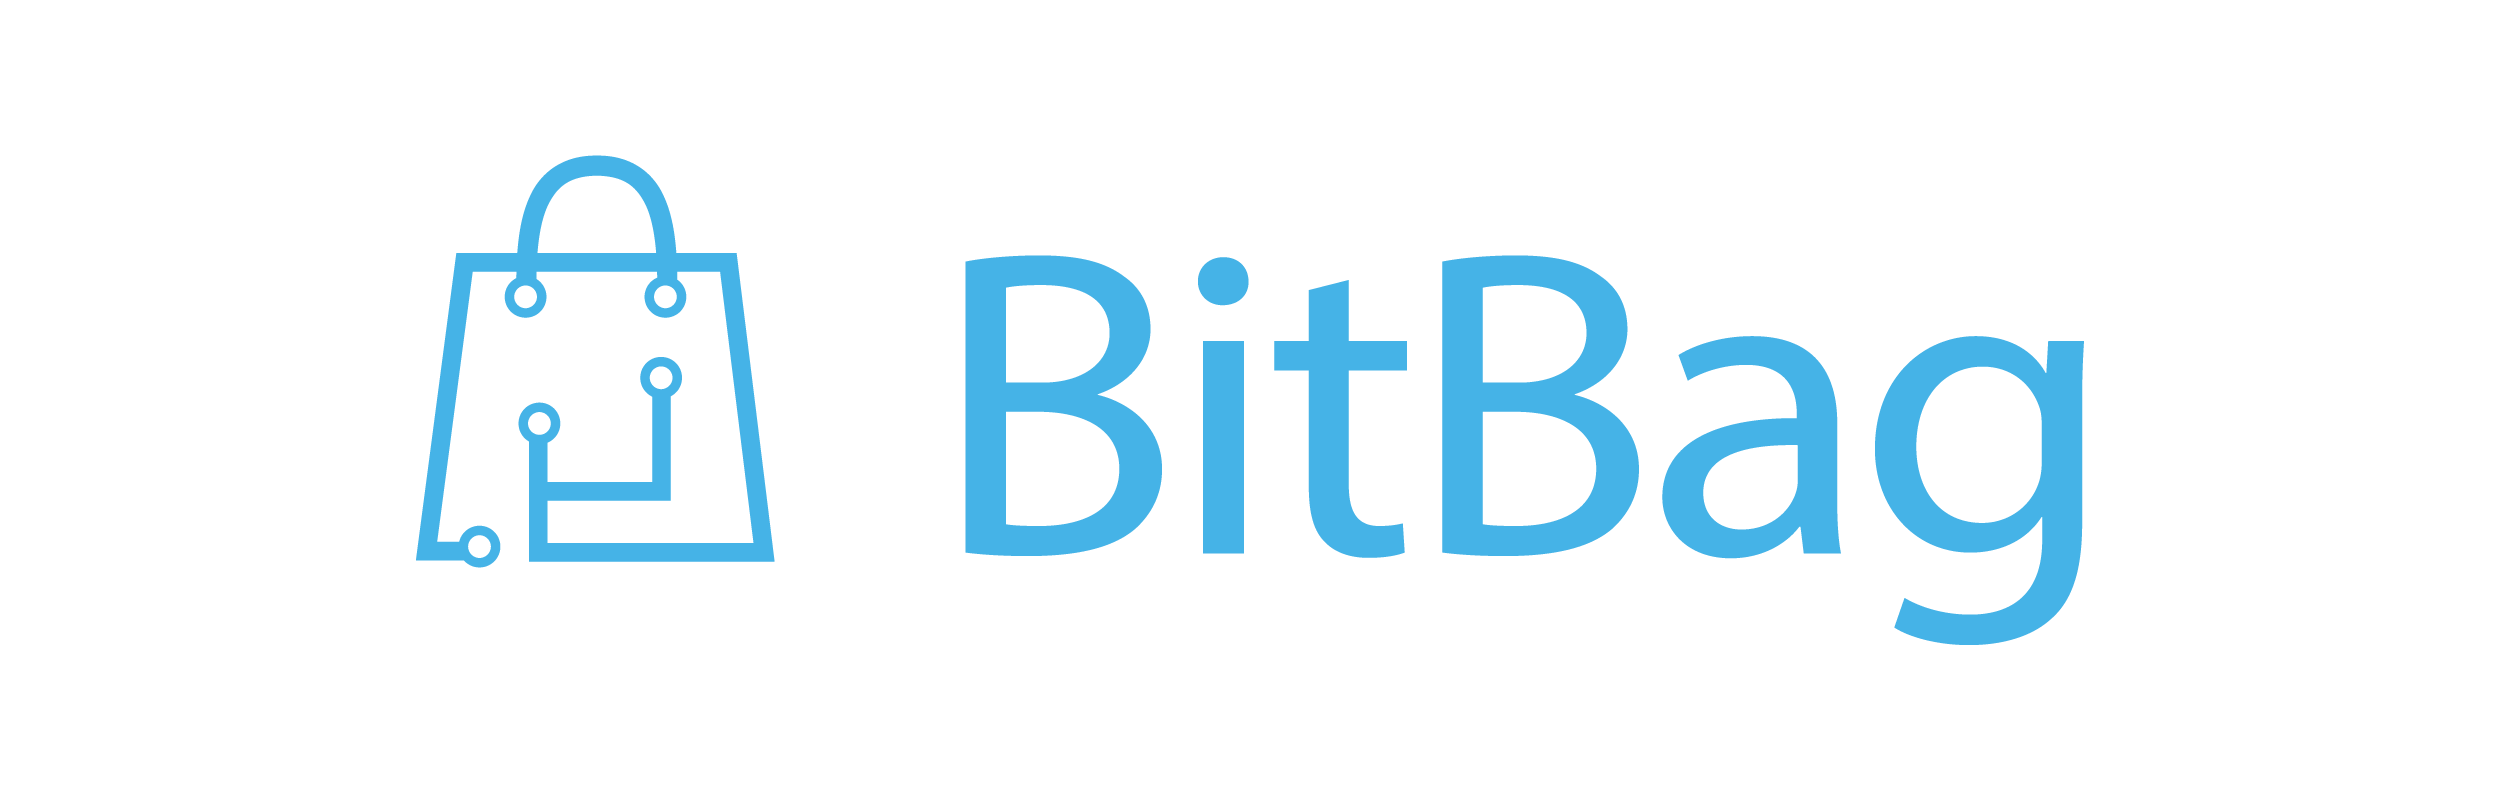 BitBag logo